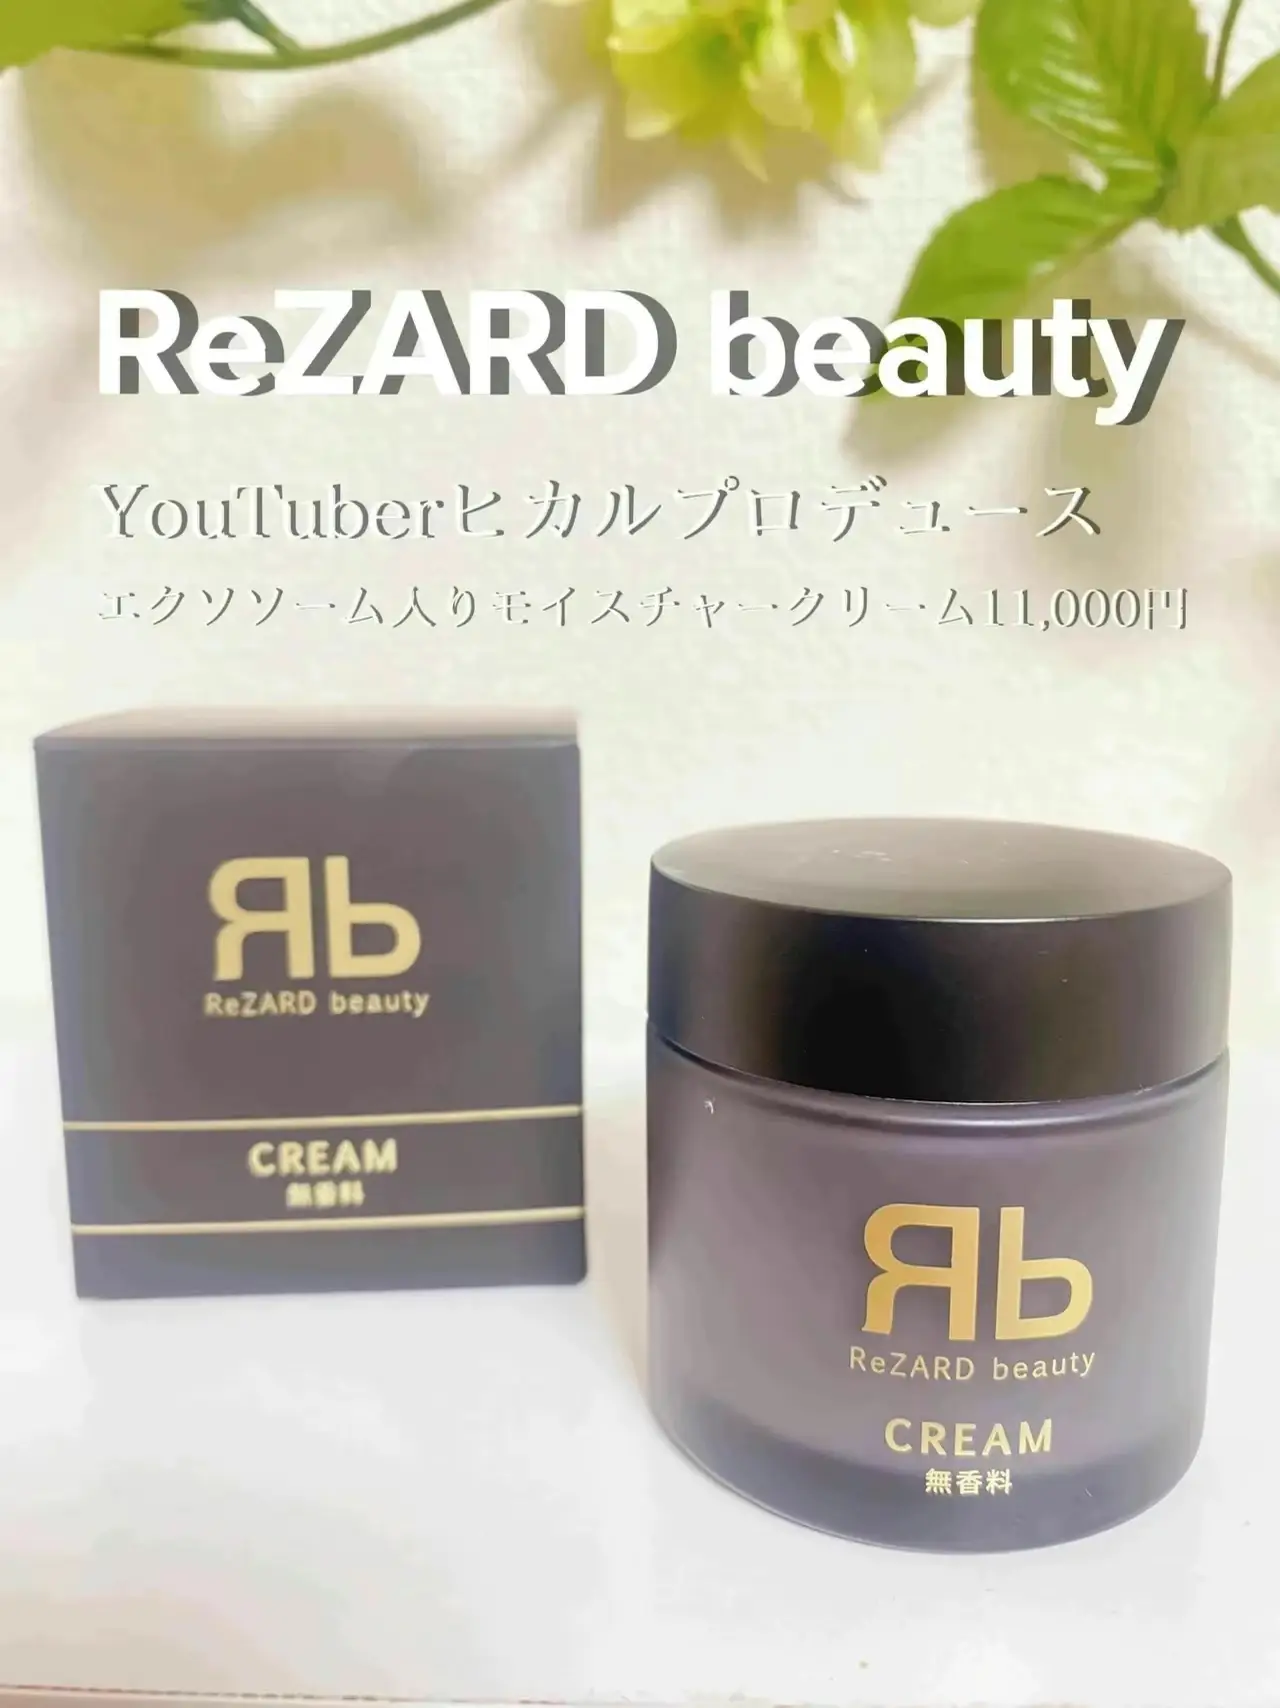 ポイント2倍 【6月購入】新品未使用 ▪︎ReZARD beauty CREAM (無香料) 通販